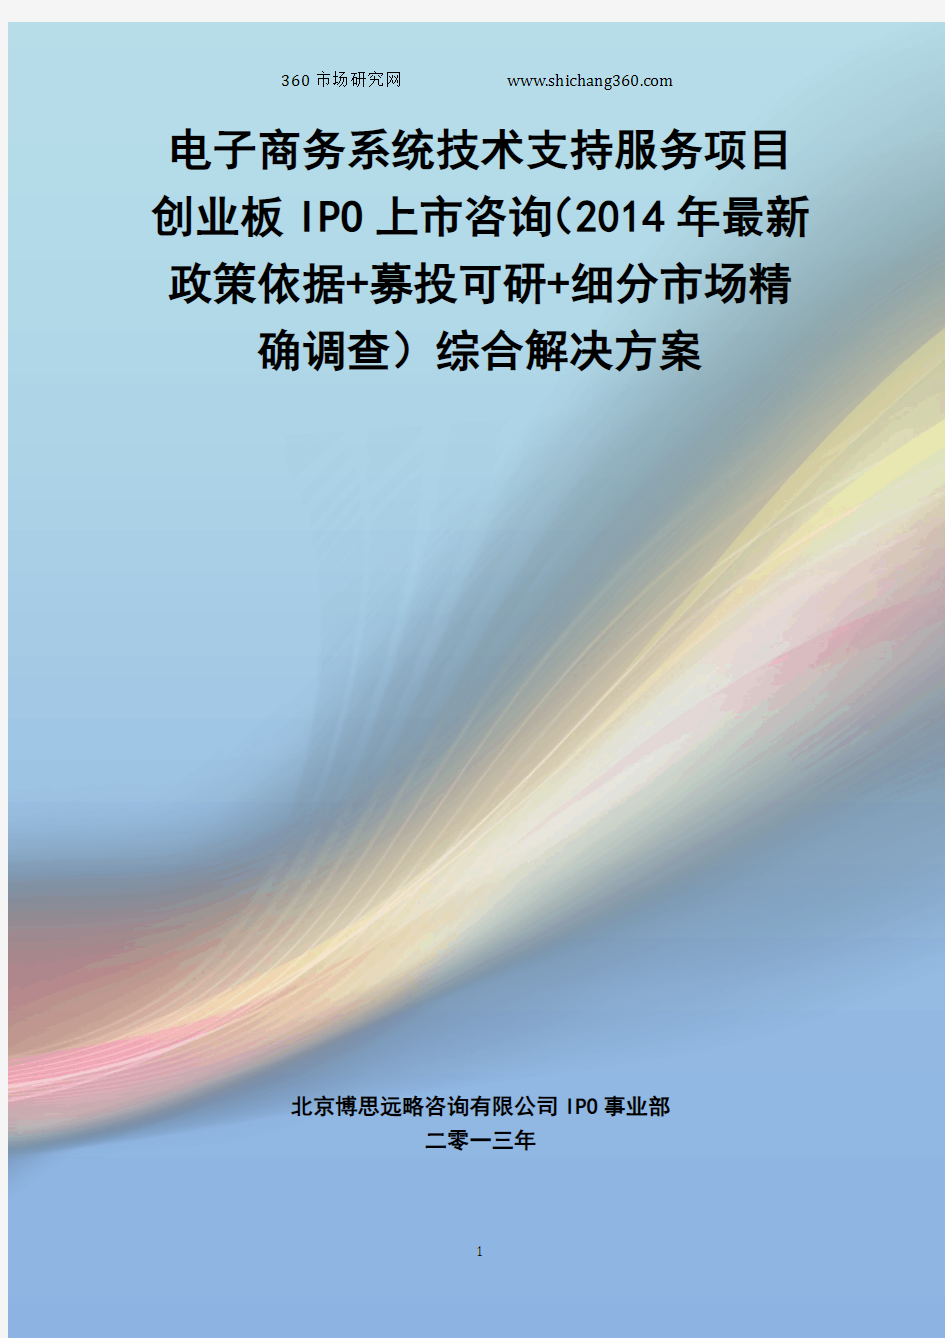 电子商务系统技术支持服务IPO上市咨询(2014年最新政策+募投可研+细分市场调查)综合解决方案